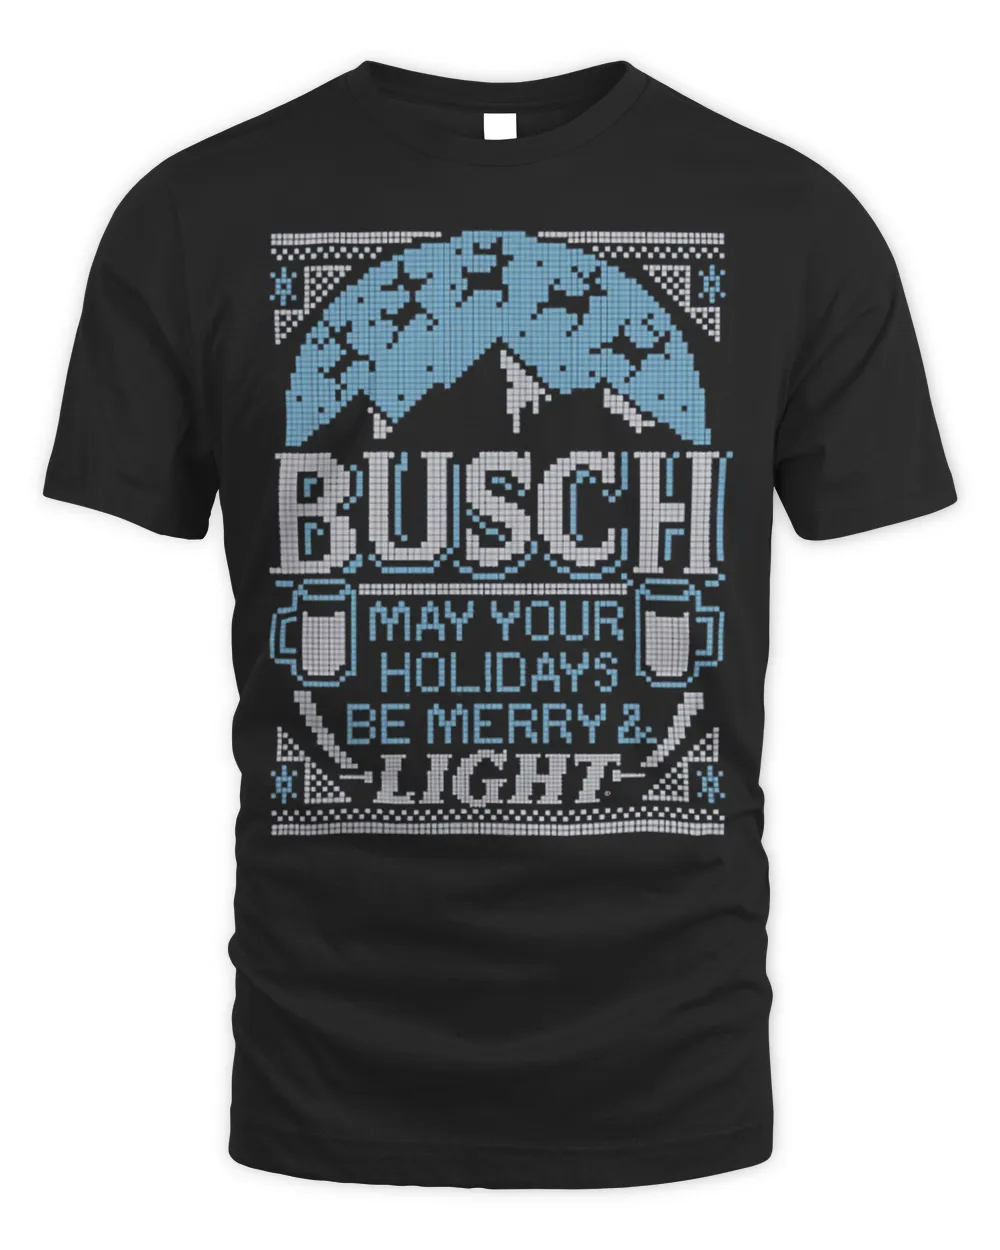 Busch Light Be Merry Light T-Shirt